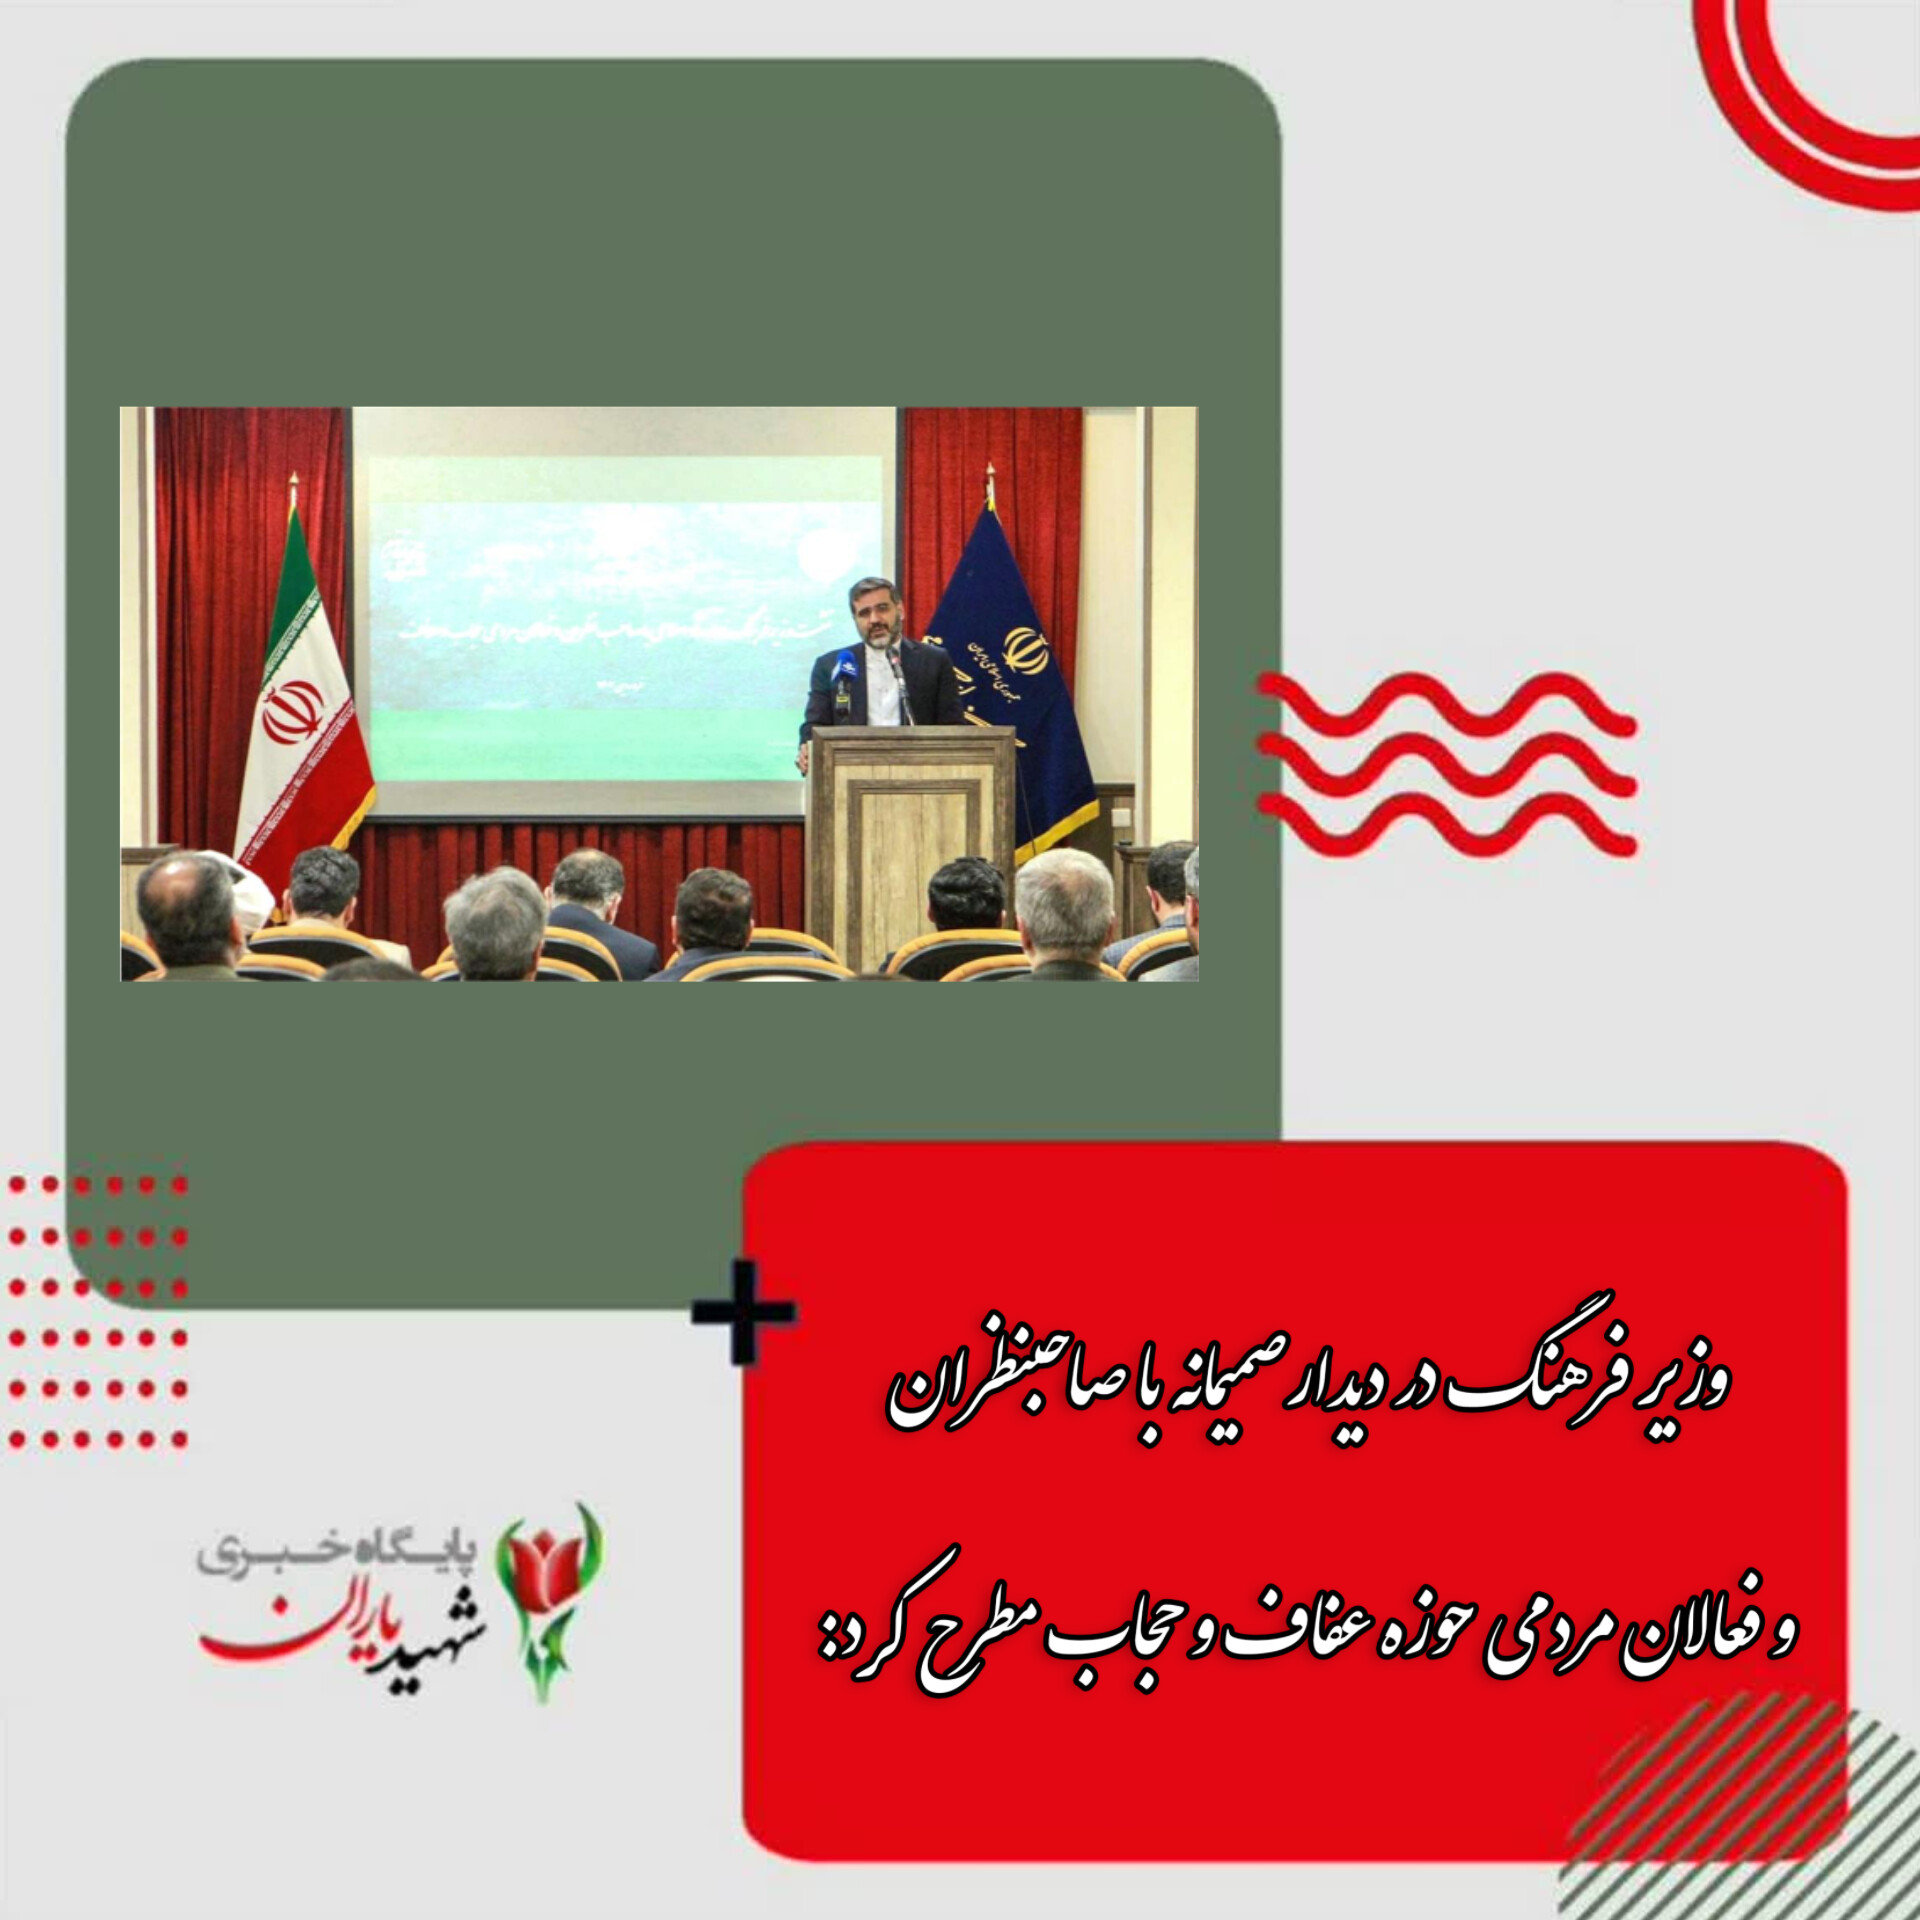 وزیر فرهنگ در دیدار صمیمانه با صاحبنظران و فعالان مردمی حوزه عفاف و حجاب مطرح کرد: